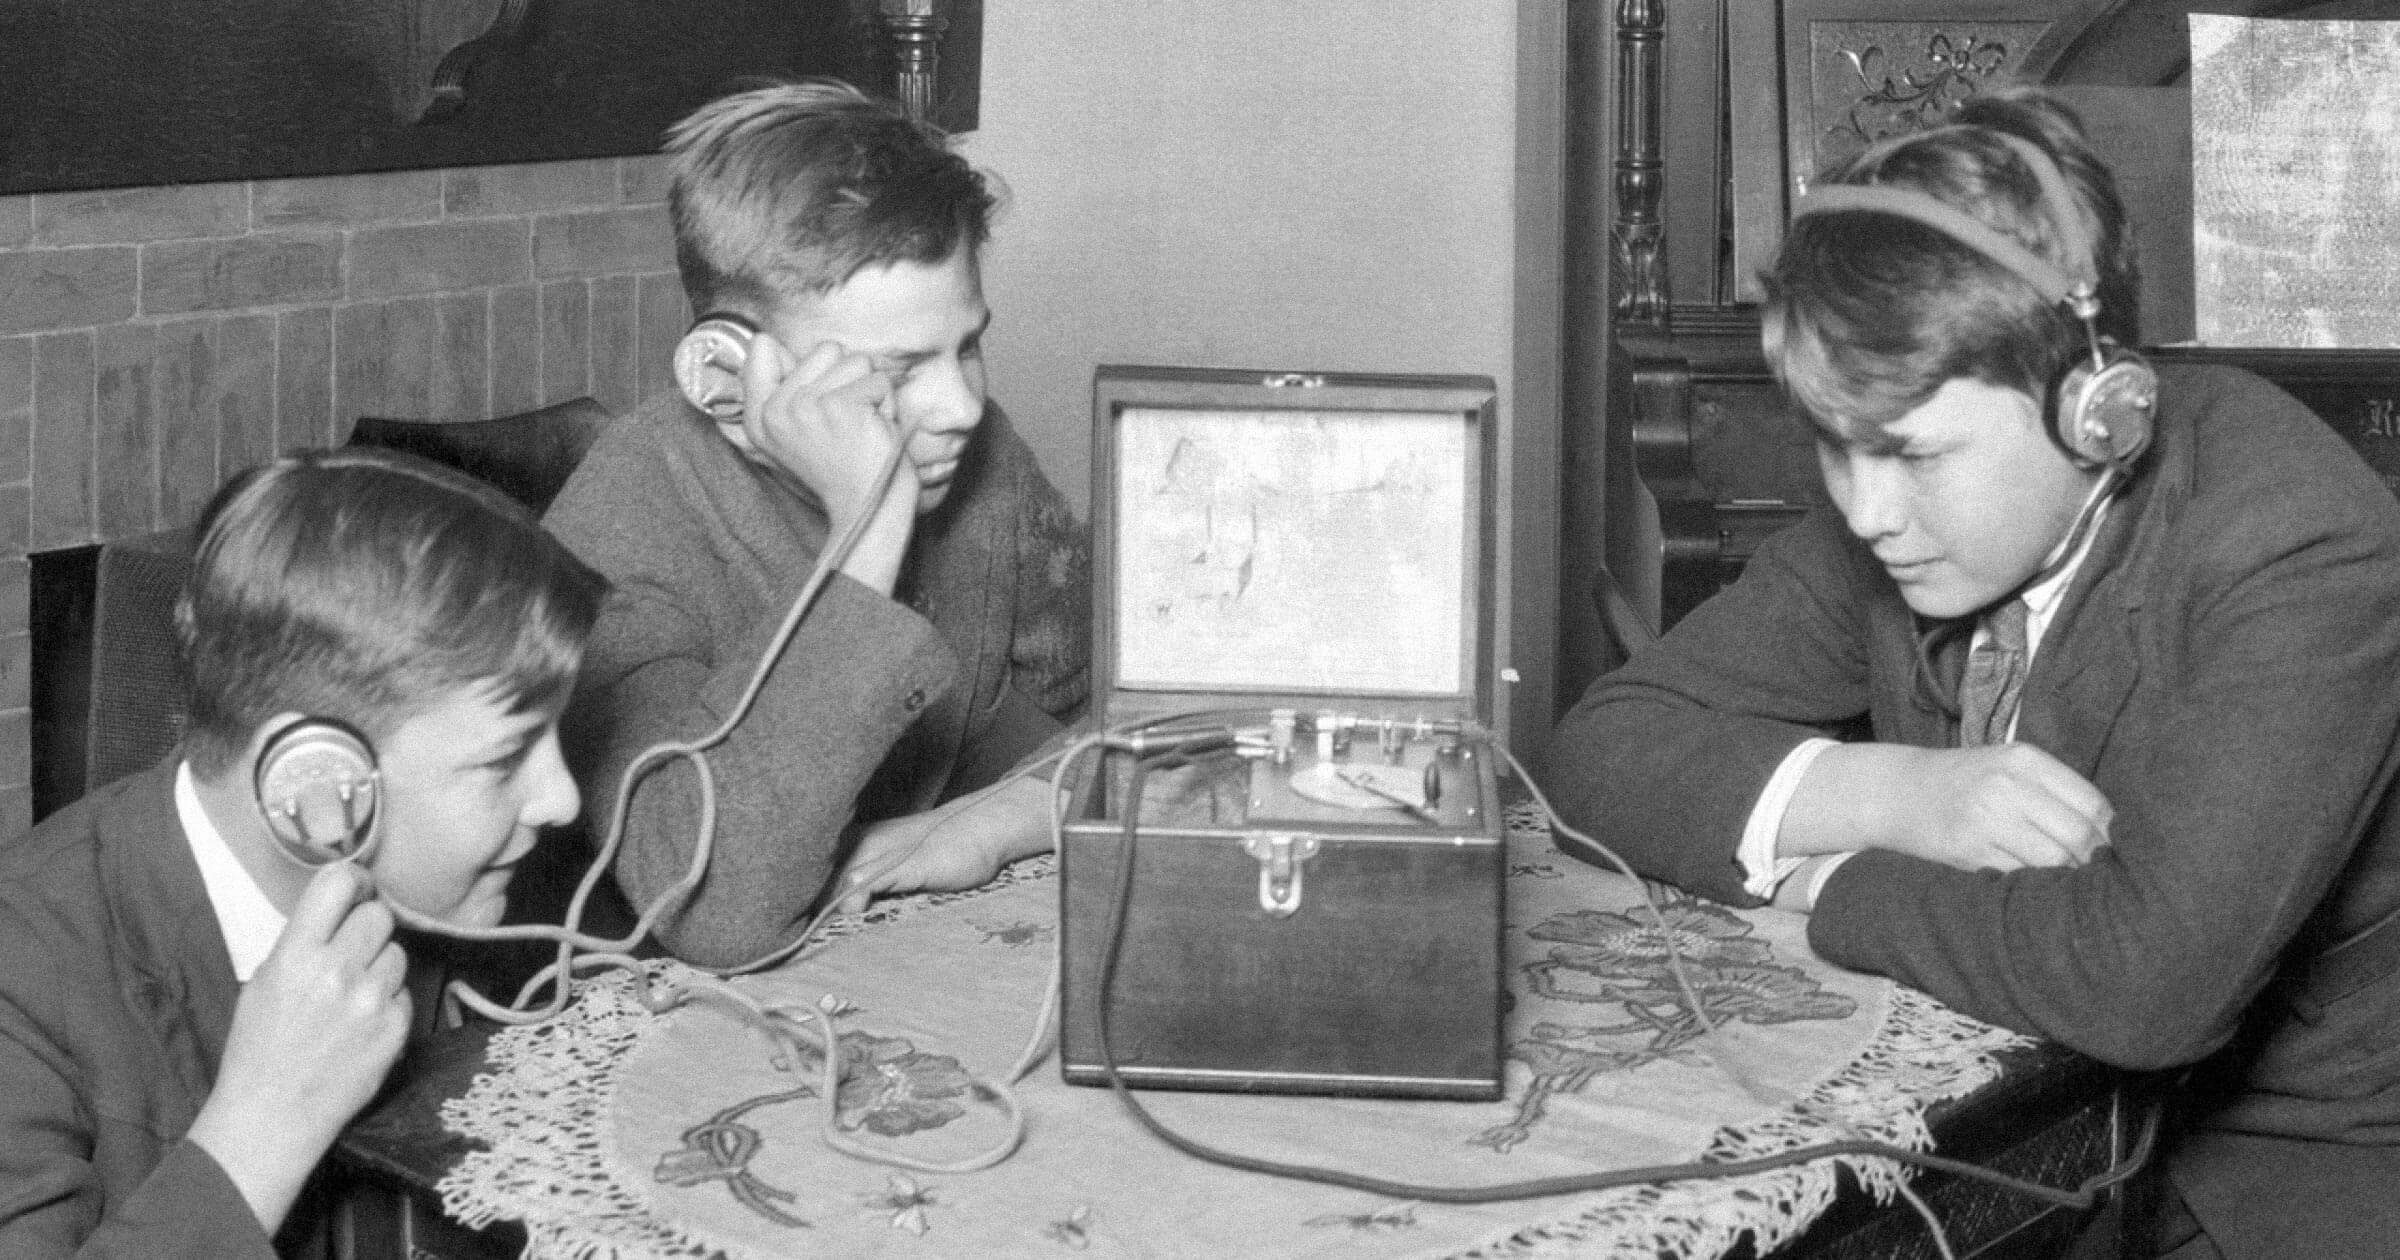 Дети слушают радио в наушниках (1920-е). Источник: insdrcdn.com